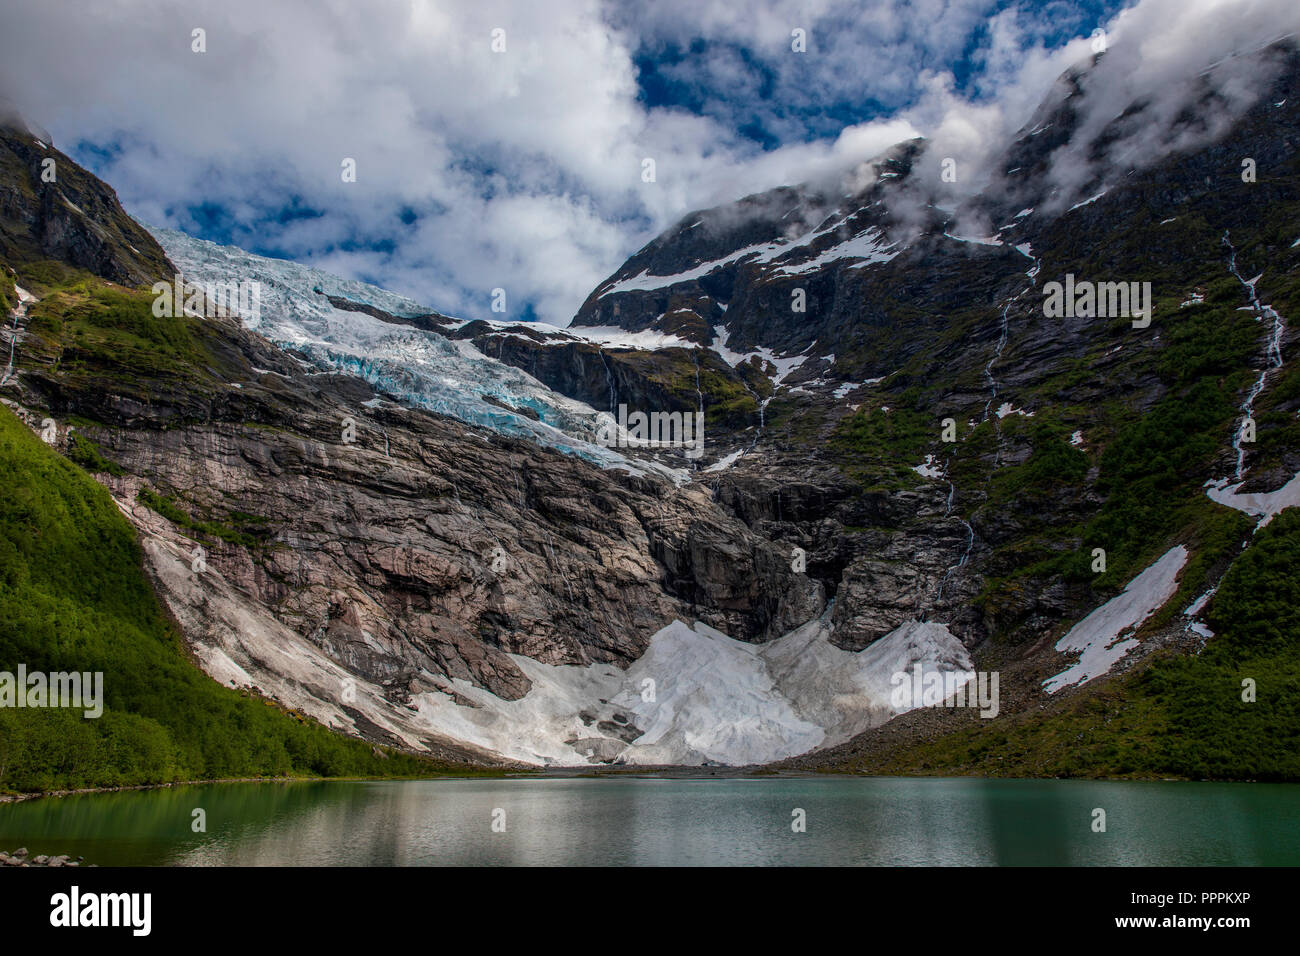 Glacier, Boyabreen, Sogn og Fjordane, Norway Stock Photo